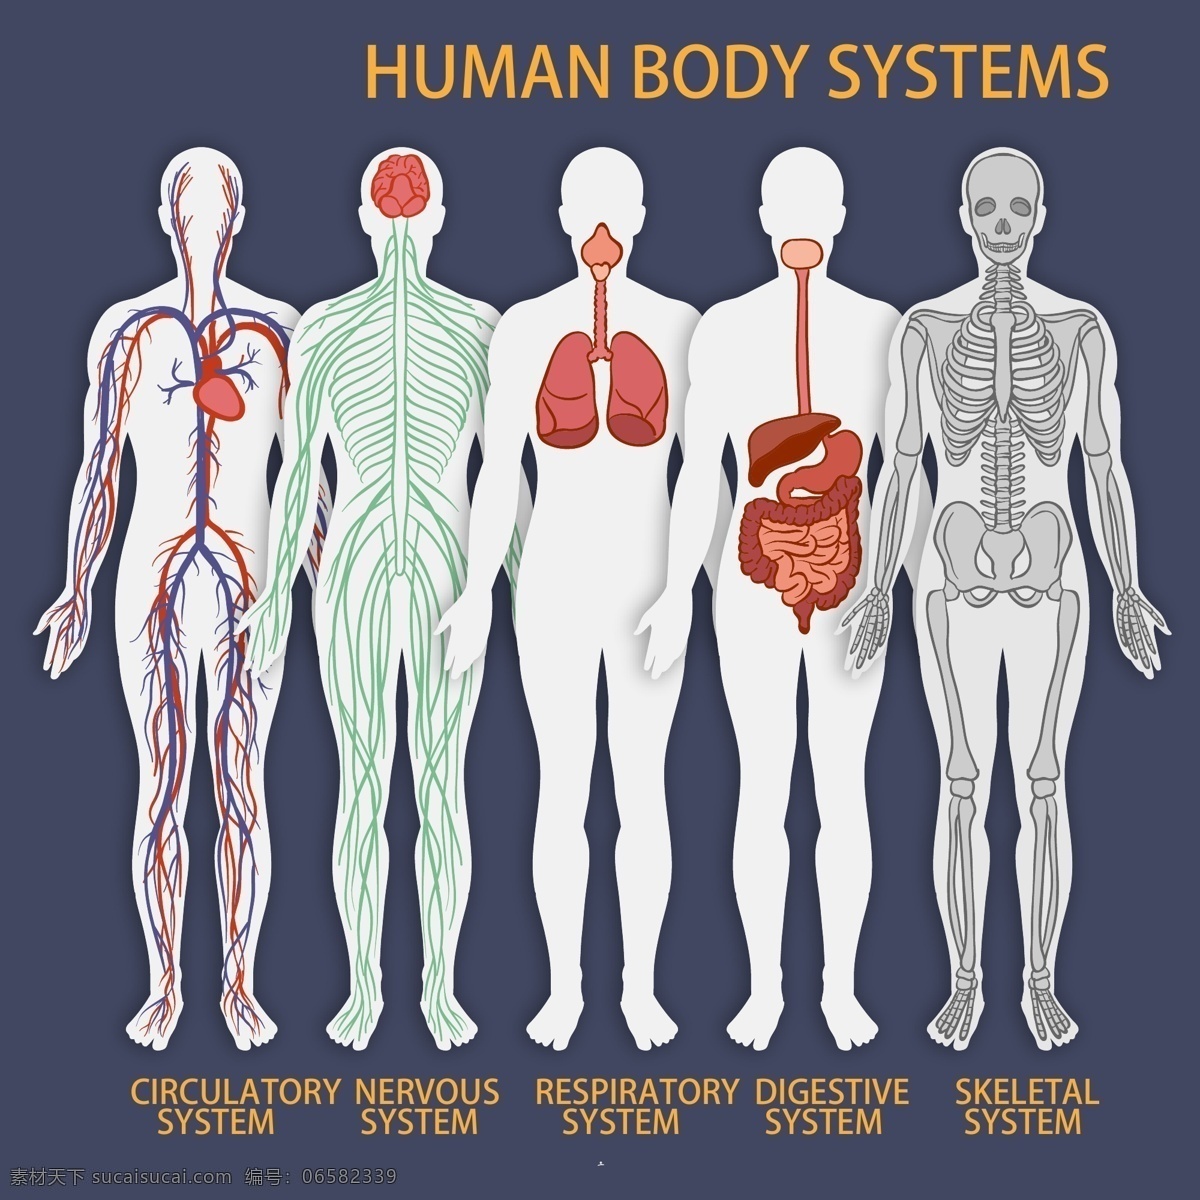 款 彩绘 人体 系统 矢量 器官 消化系统 神经系统 呼吸系统 循环系统 运动系统 骨骼 大脑 心脏 肺部 血管 神经 肠胃 人体系统 现代科技 医疗护理